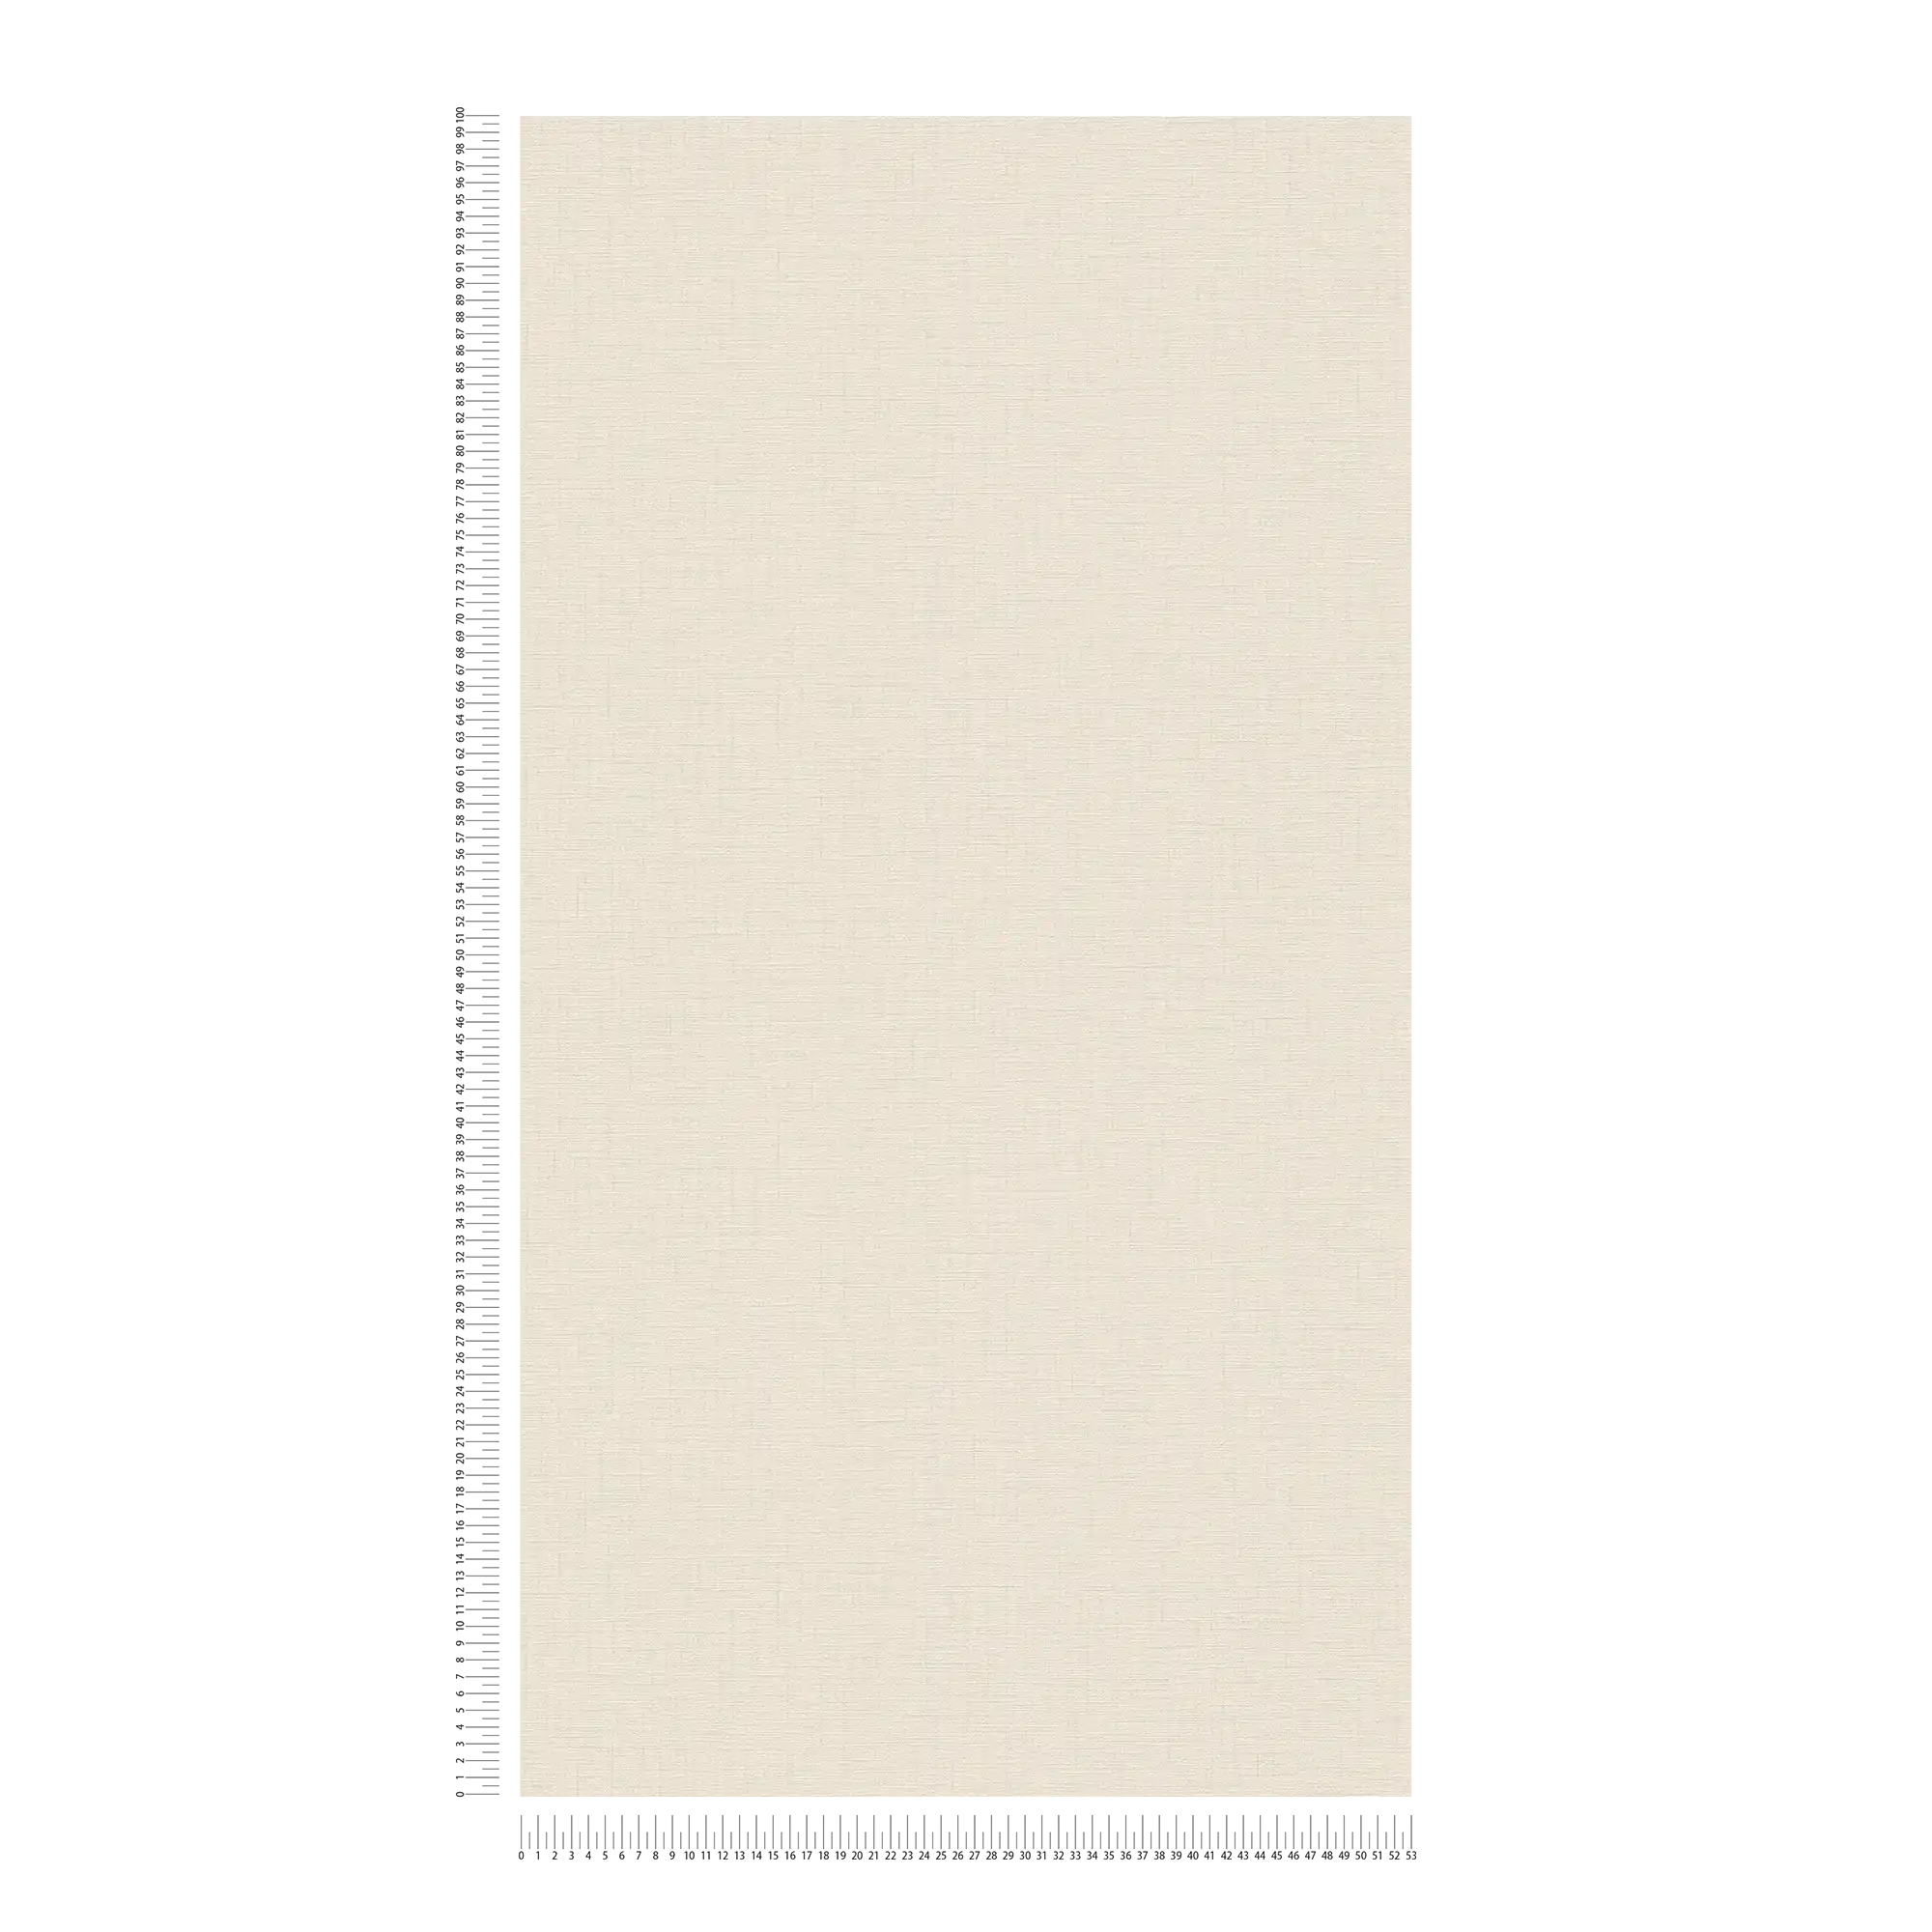             Carta da parati beige chiaro tinta unita screziata con struttura in lino
        